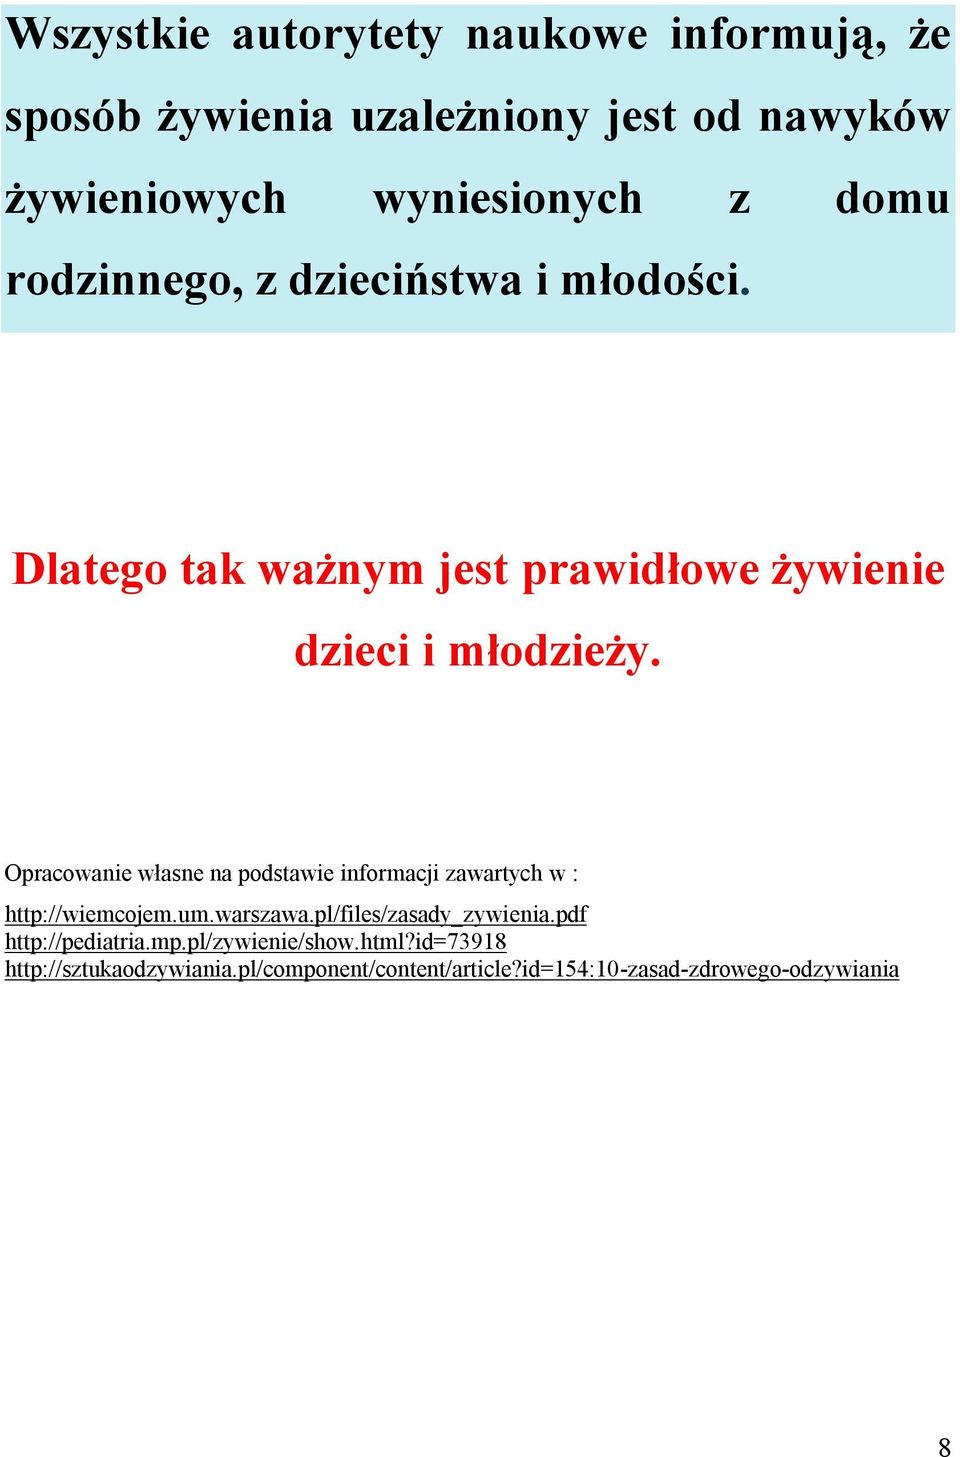 Opracowanie własne na podstawie informacji zawartych w : http://wiemcojem.um.warszawa.pl/files/zasady_zywienia.